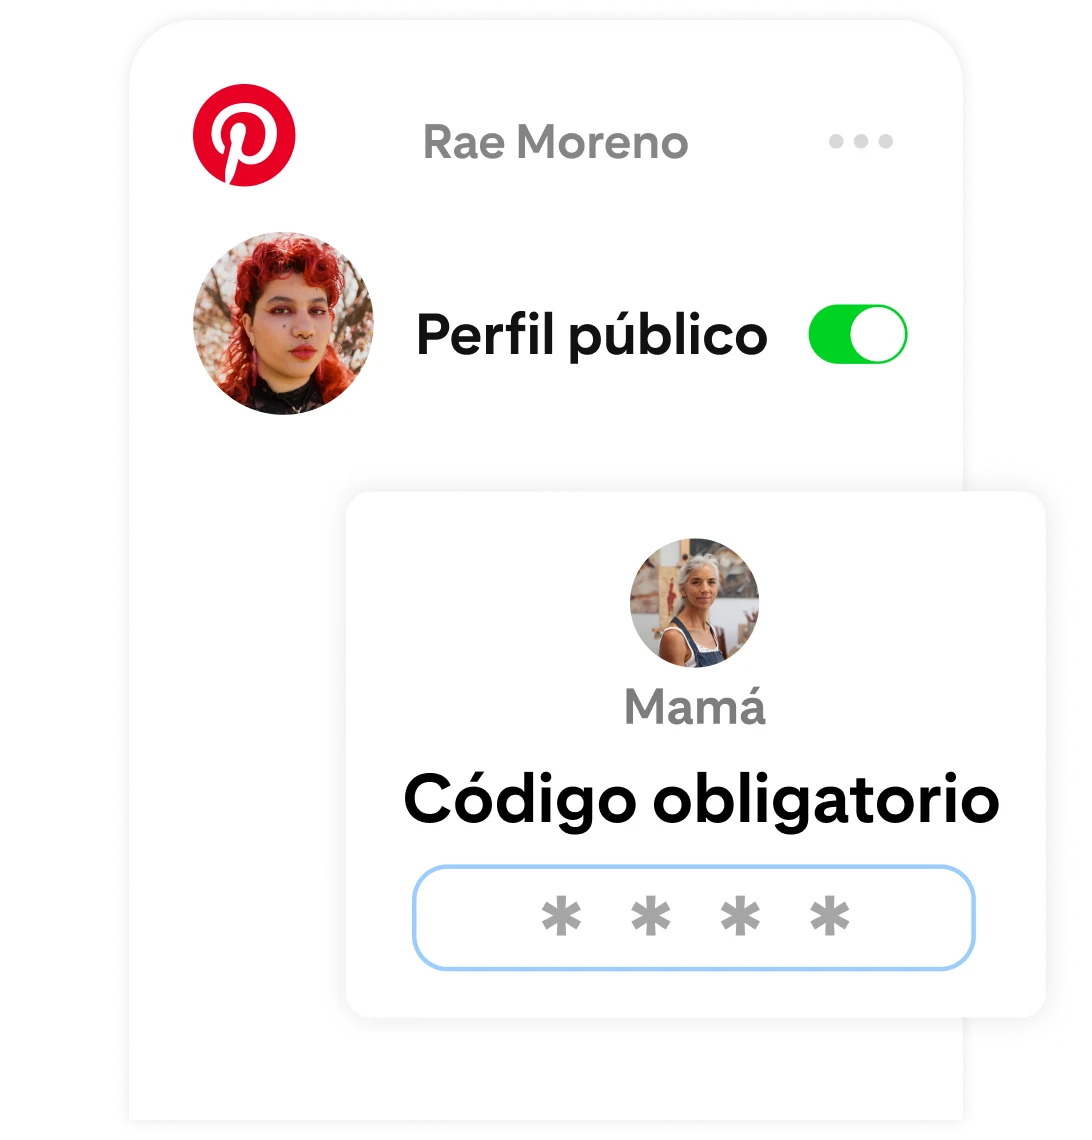 La página de configuración de Pinterest de Rae Moreno, en la que el "Perfil público" está activado, pero requiere que uno de sus padres ingrese un código para confirmar el cambio.